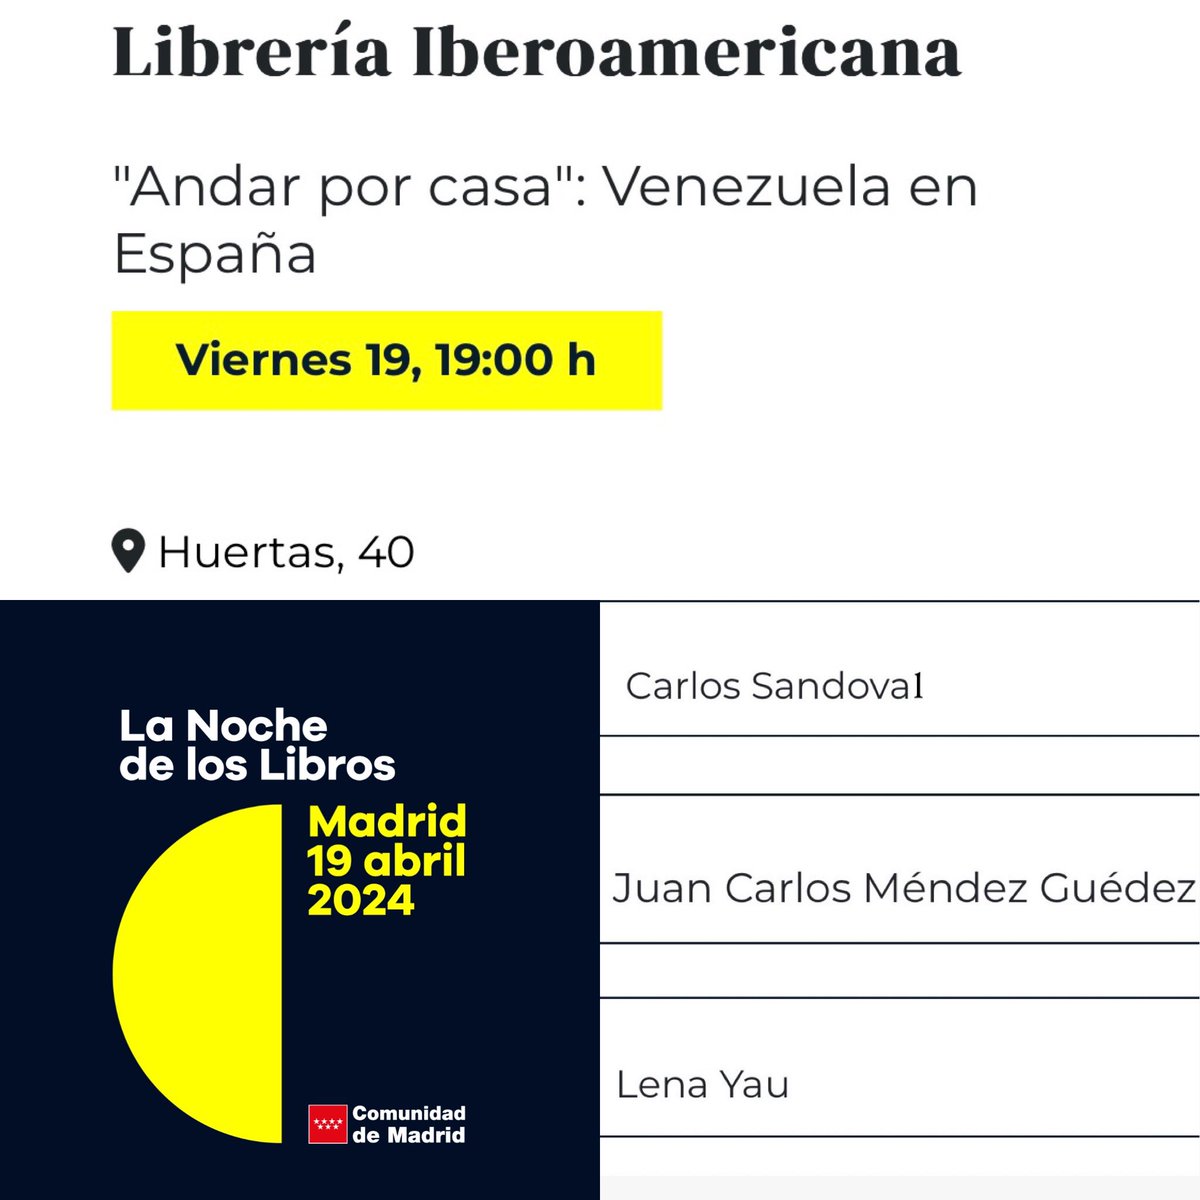 Y el 19 de abril en La noche de los libros a las 19 horas, la librería Iberoamericana (C/  de las Huertas 40) dedica una mesa redonda a Venezuela y su literatura.
Allí estaré junto a los queridos Carlos Sandoval y @LenaYau 

#lanochedeloslibros